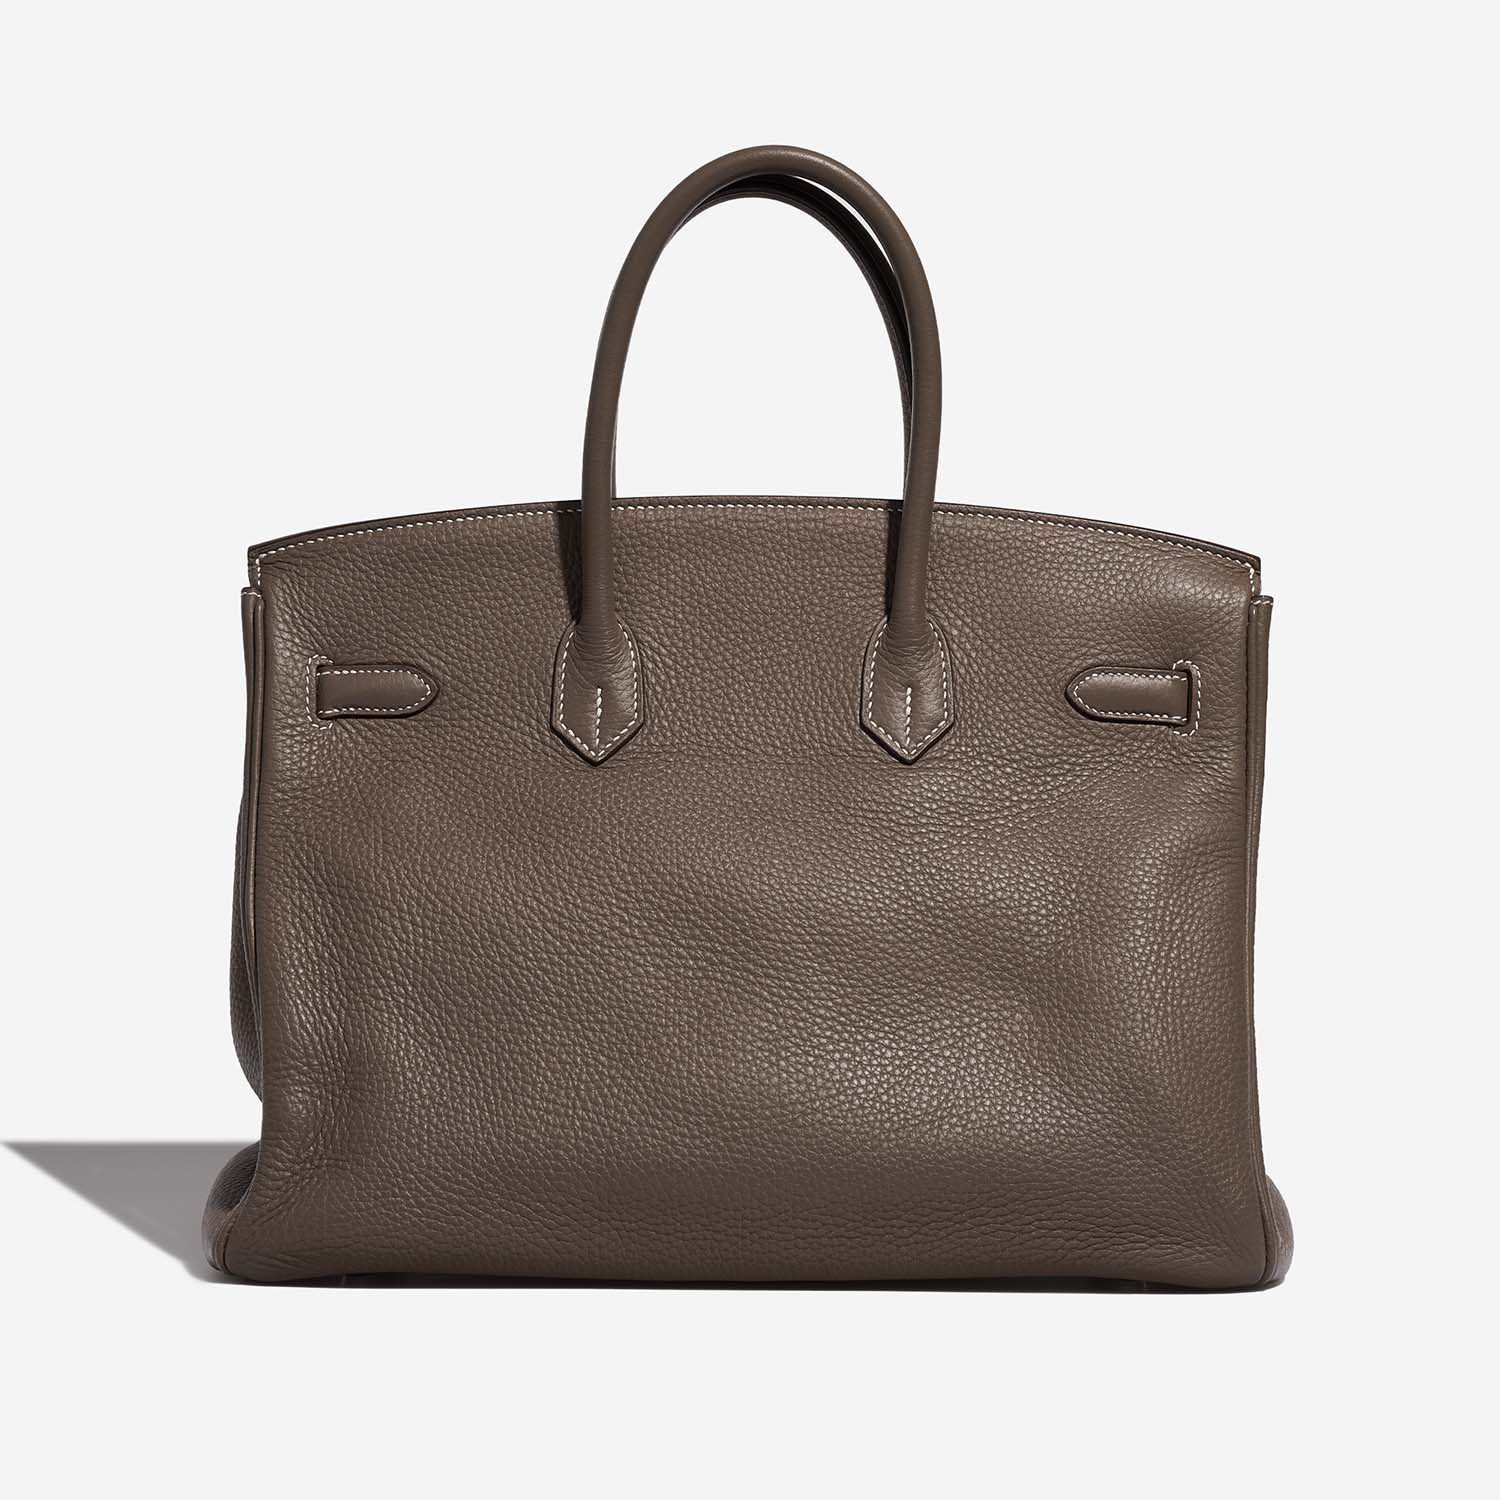 Hermès Birkin 35 Etoupe Back | Verkaufen Sie Ihre Designertasche auf Saclab.com